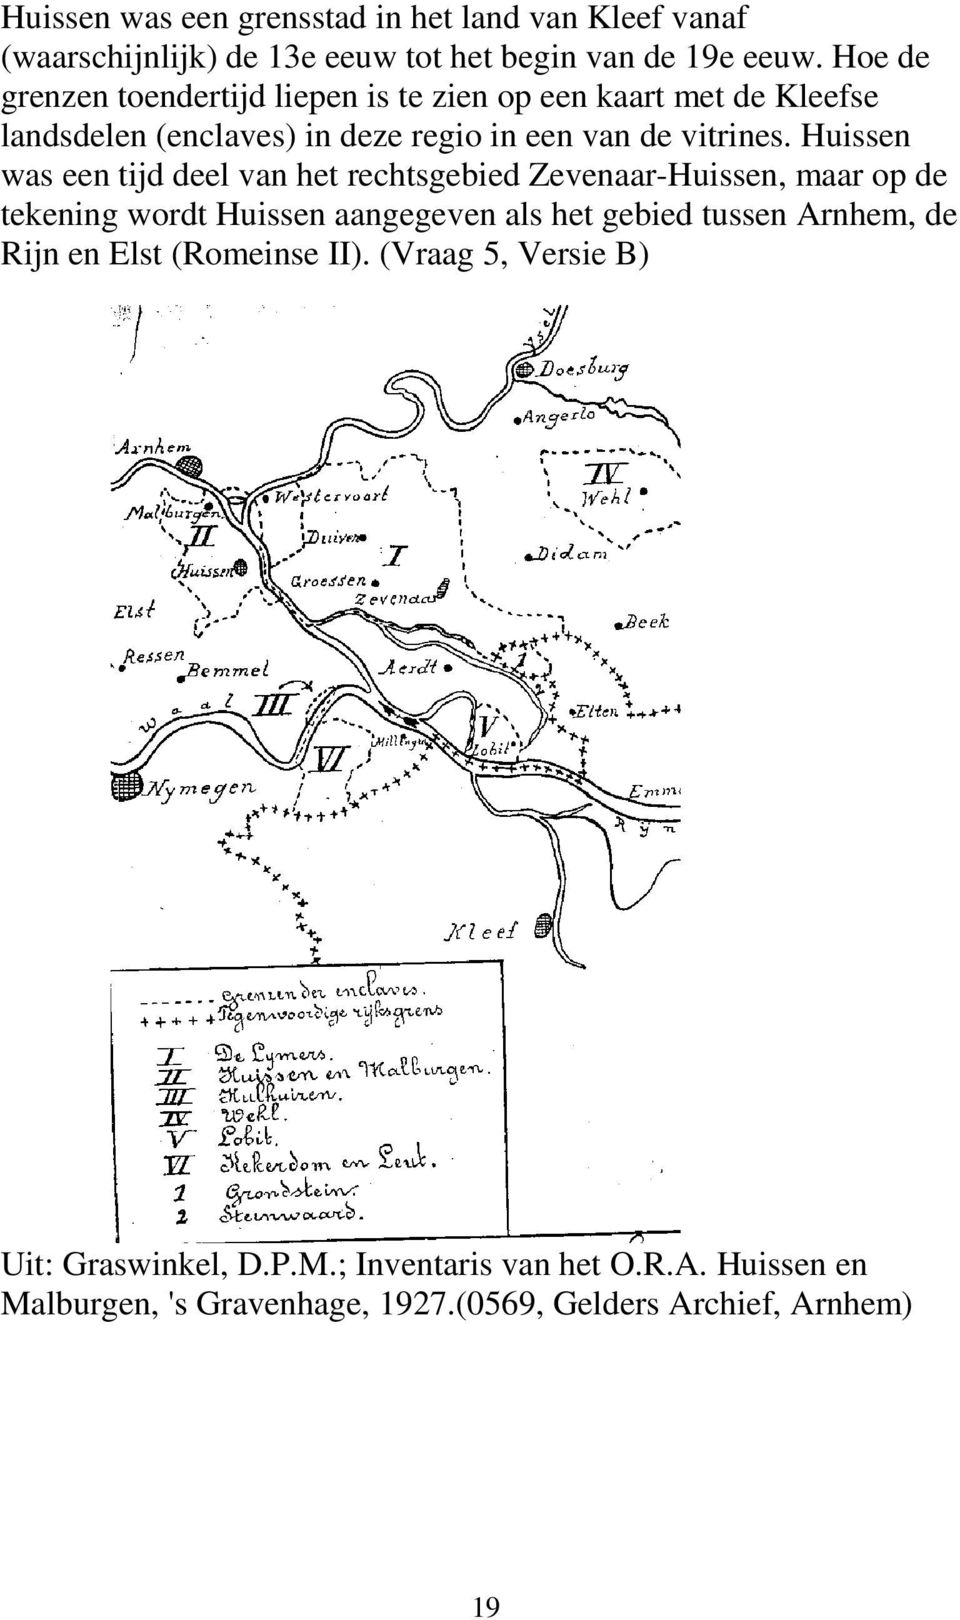 Huissen was een tijd deel van het rechtsgebied Zevenaar-Huissen, maar op de tekening wordt Huissen aangegeven als het gebied tussen Arnhem,